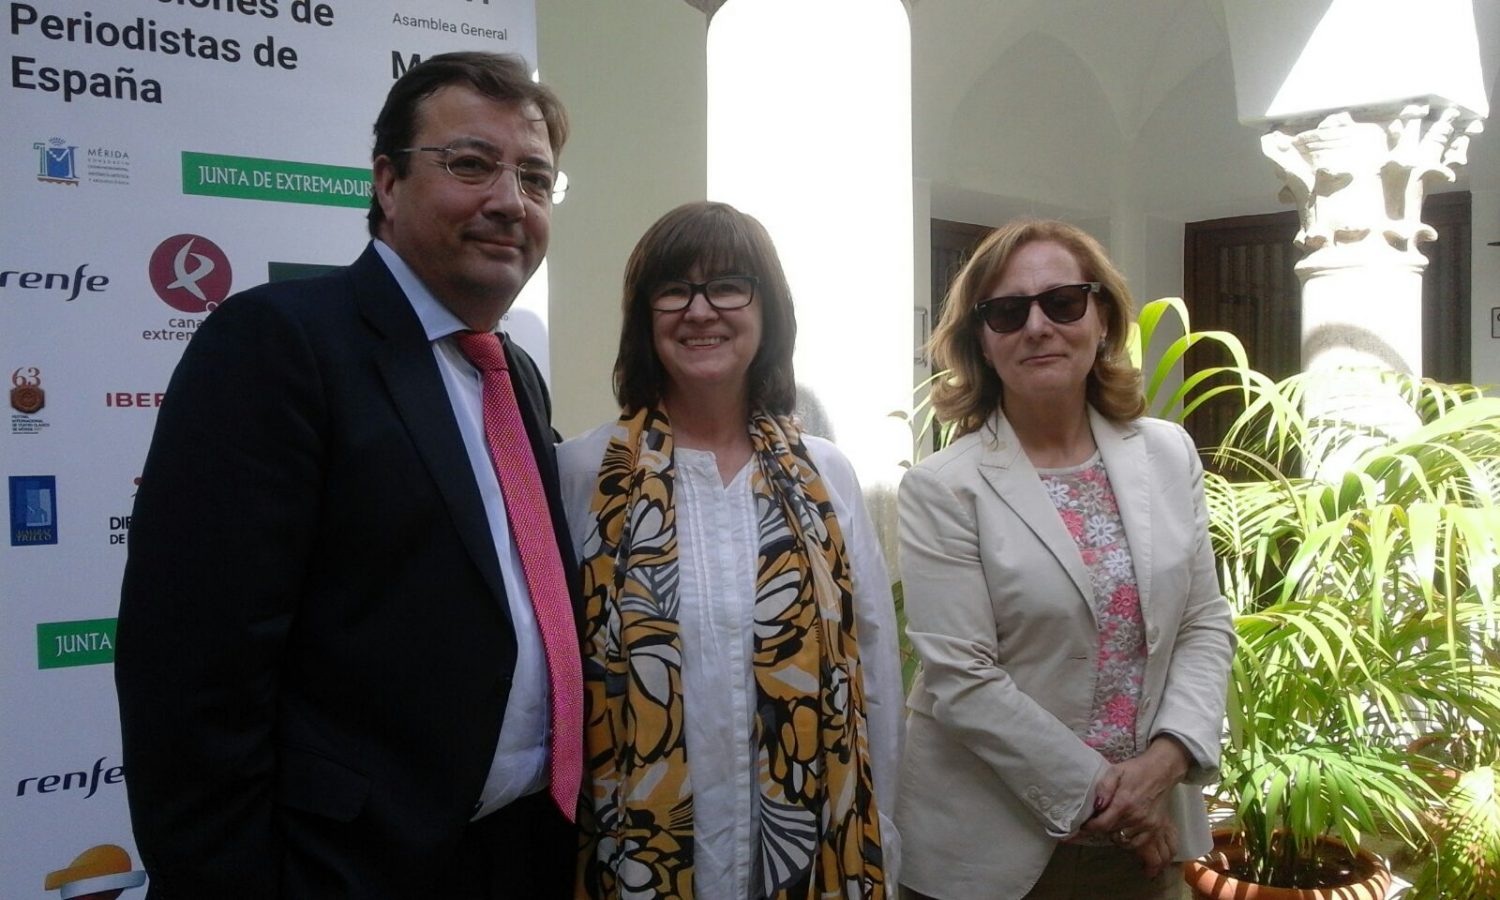 De izquierda a derecha: el presidente de la Junta de Extremadura, Guillermo Fernández Vara, la presidenta de APAE, Lourdes Zuriaga, y la presidenta de FAPE, Elsa González.